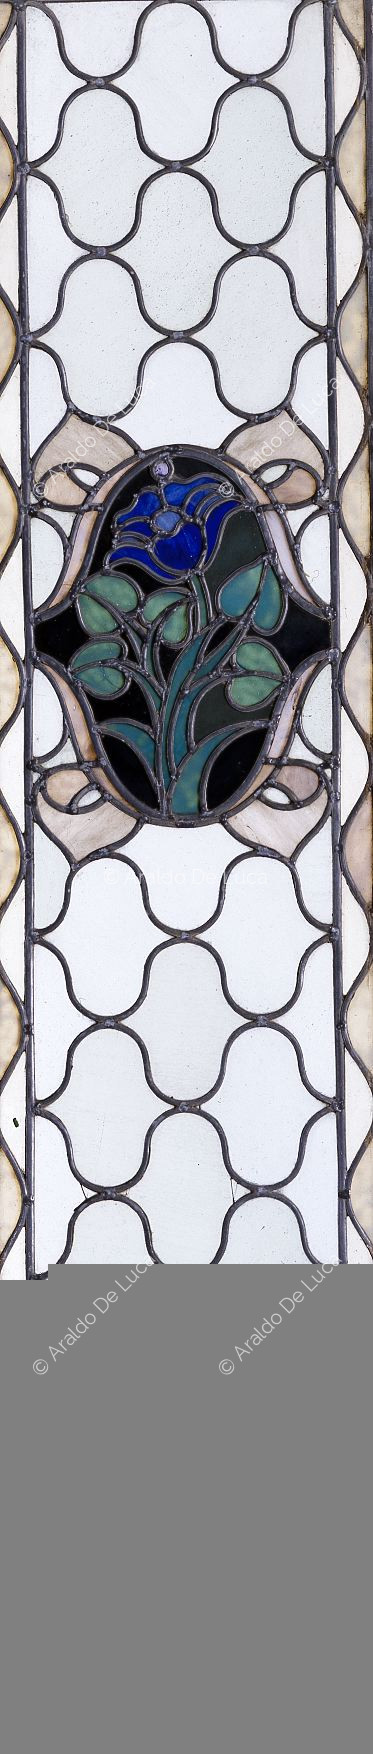 Buntglasfenster mit geometrischem Motiv und Blume